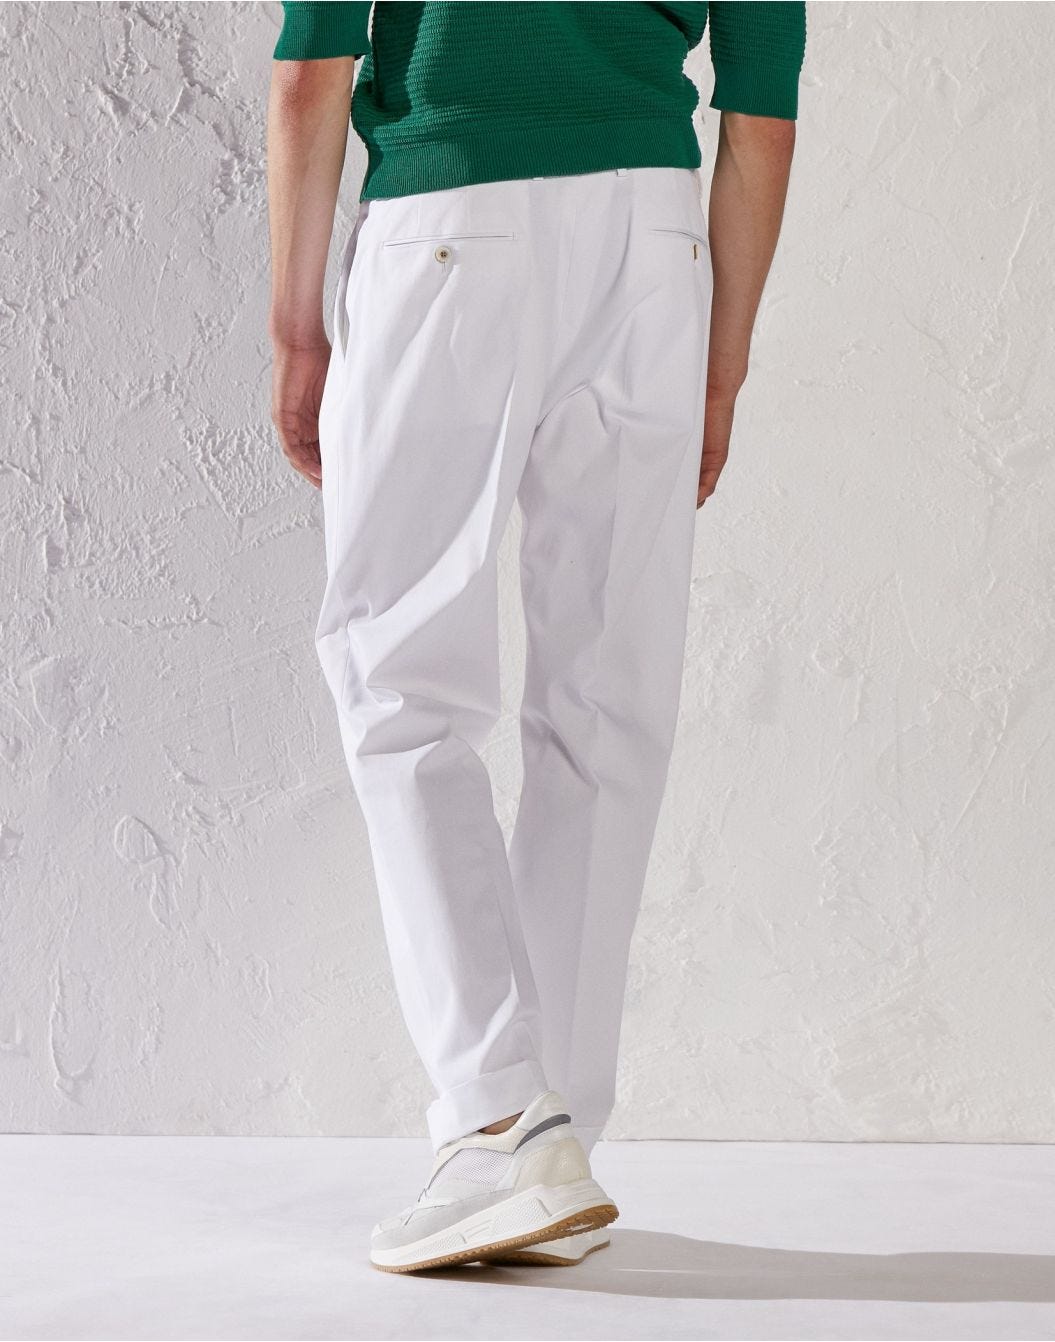 White trousers - Luigi Lardini capsule